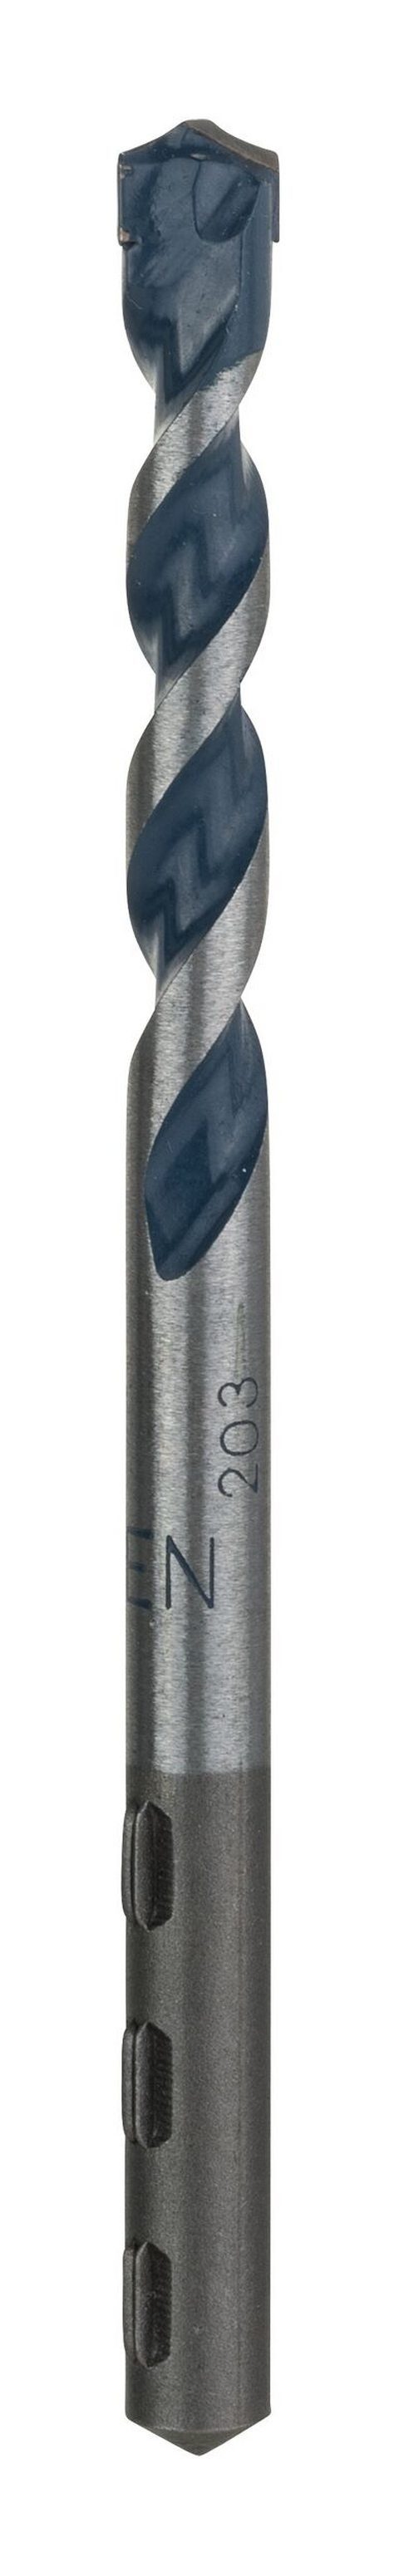 BOSCH Steinbohrer, CYL-5 100 - mm - Granite) (Blue 7 Betonbohrer x 1er-Pack 50 x